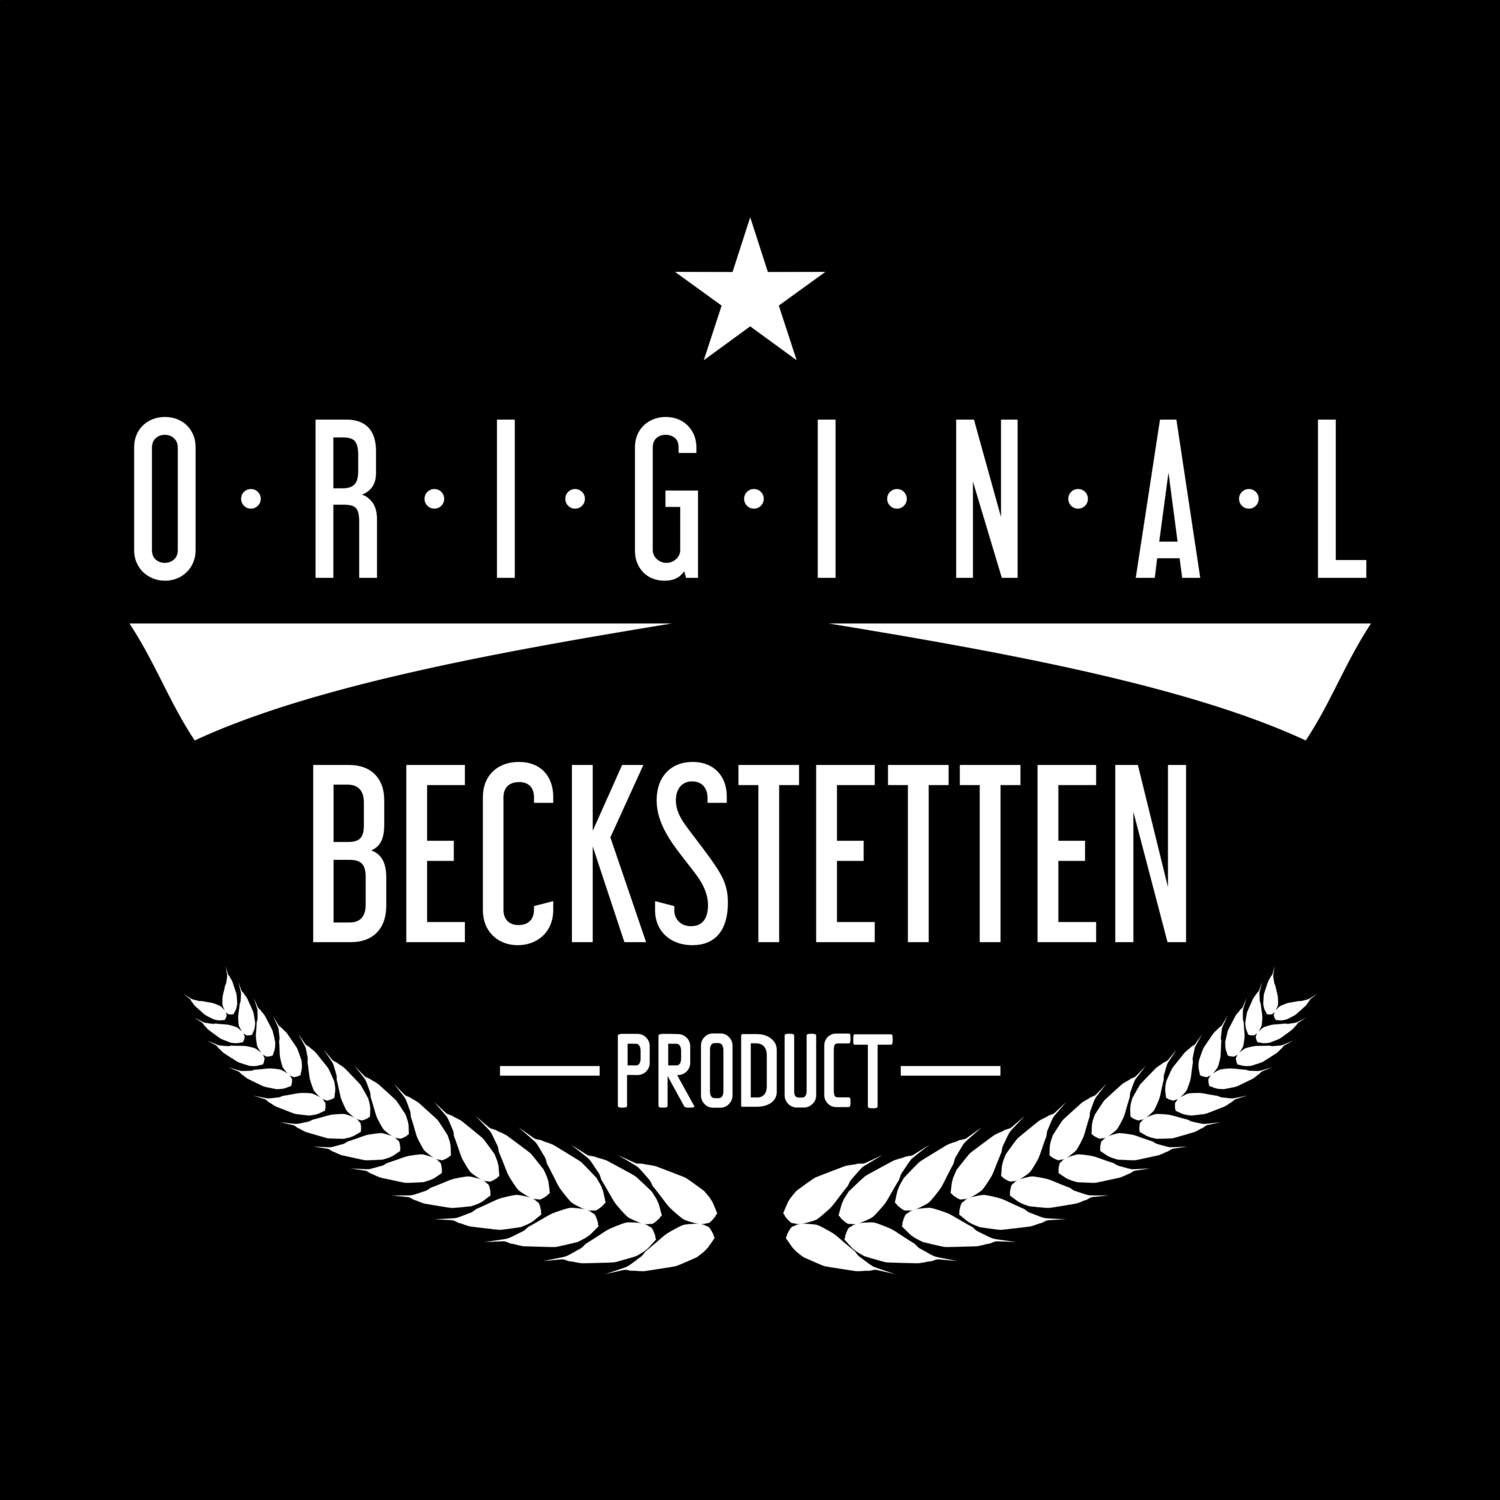 Beckstetten T-Shirt »Original Product«